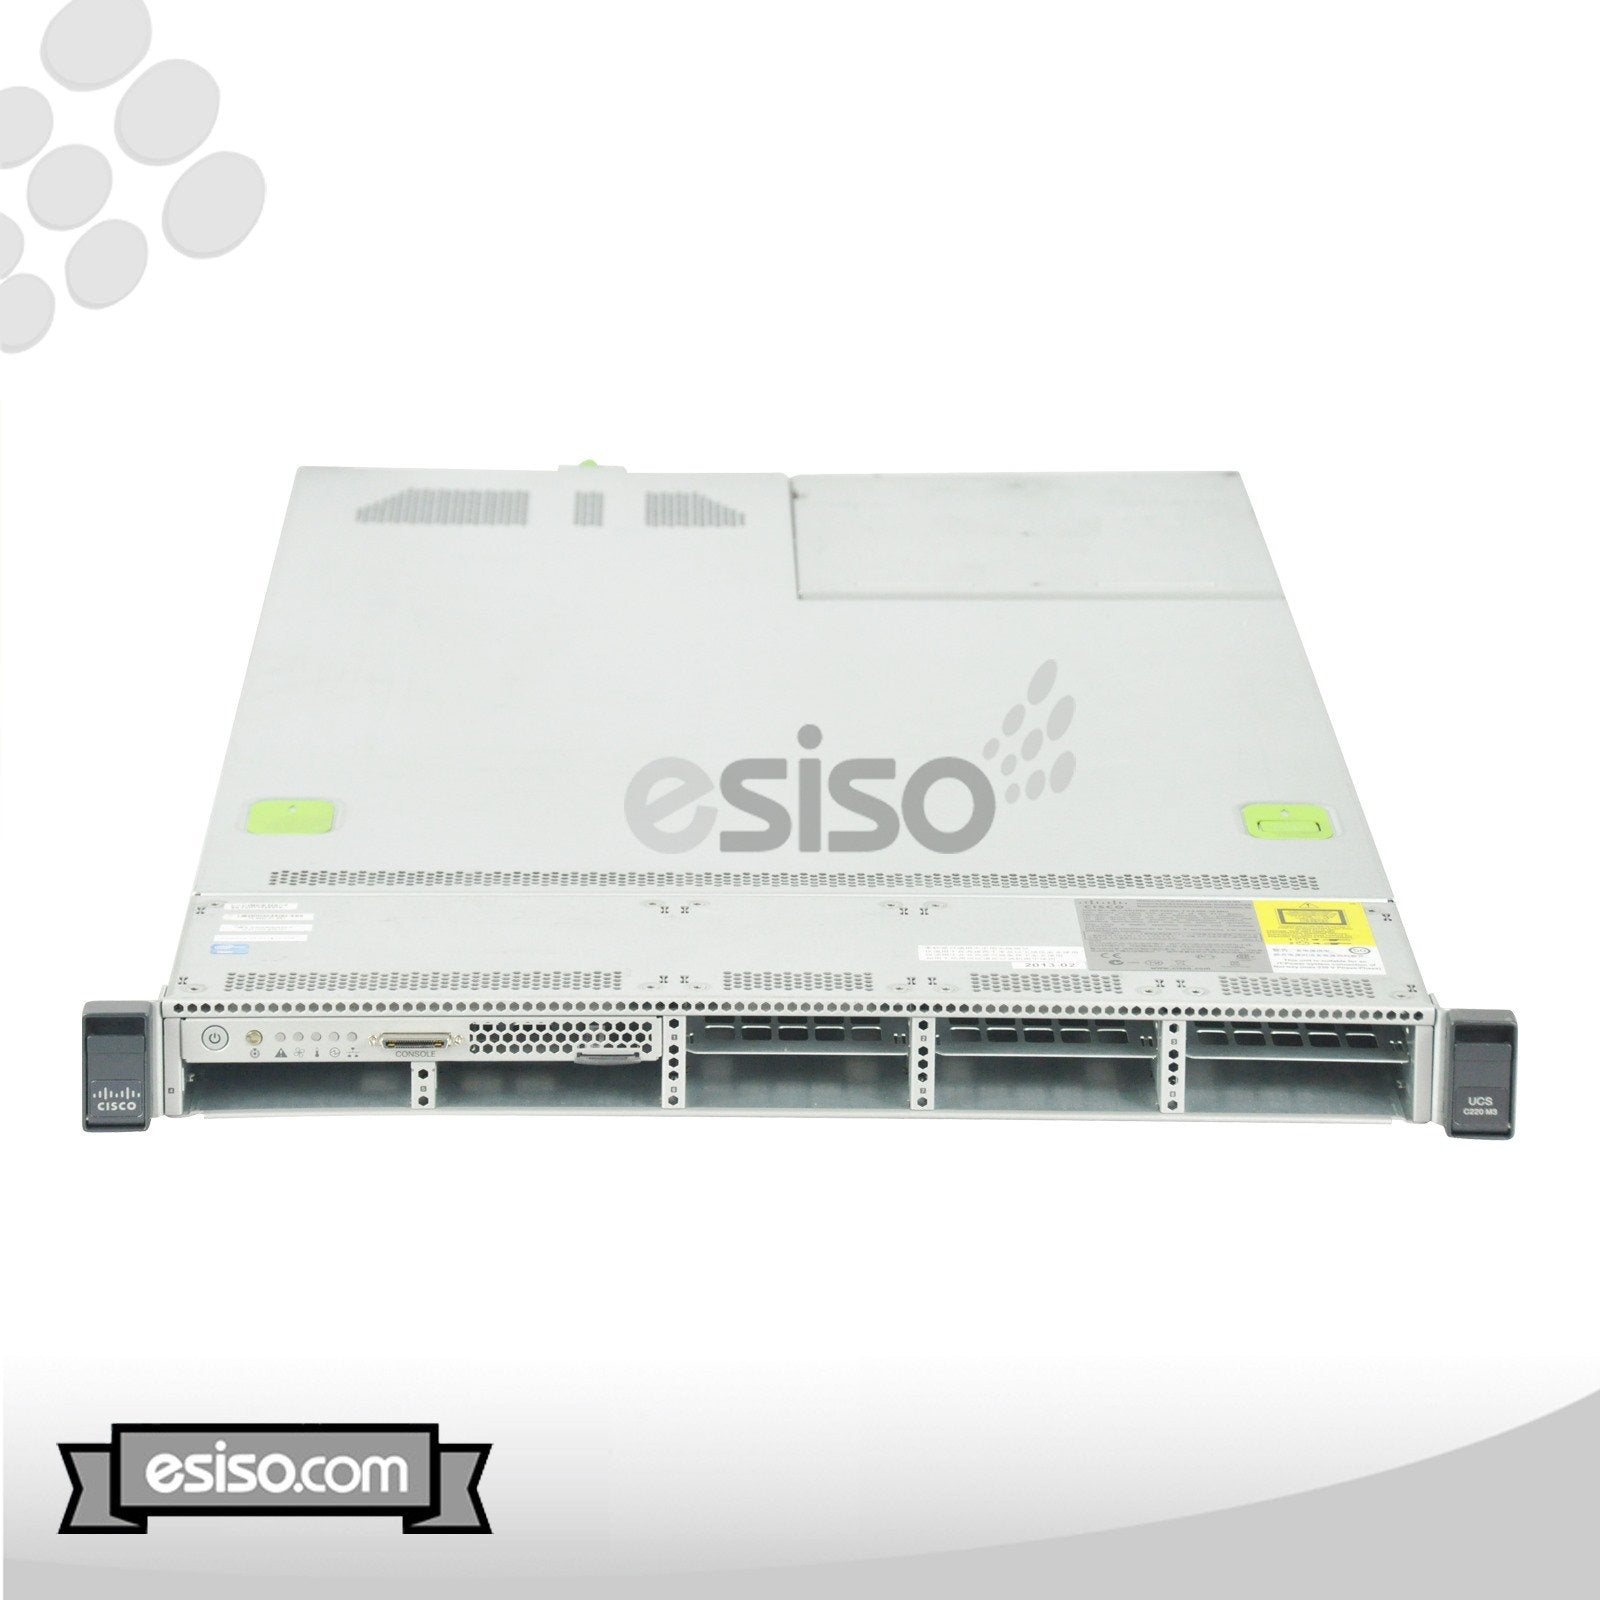 CISCO UCS C220 M3 8SFF 2x EIGHT CORE E5-2650 2.0GHz 256GB RAM 8x 1TB 7.2K SATA